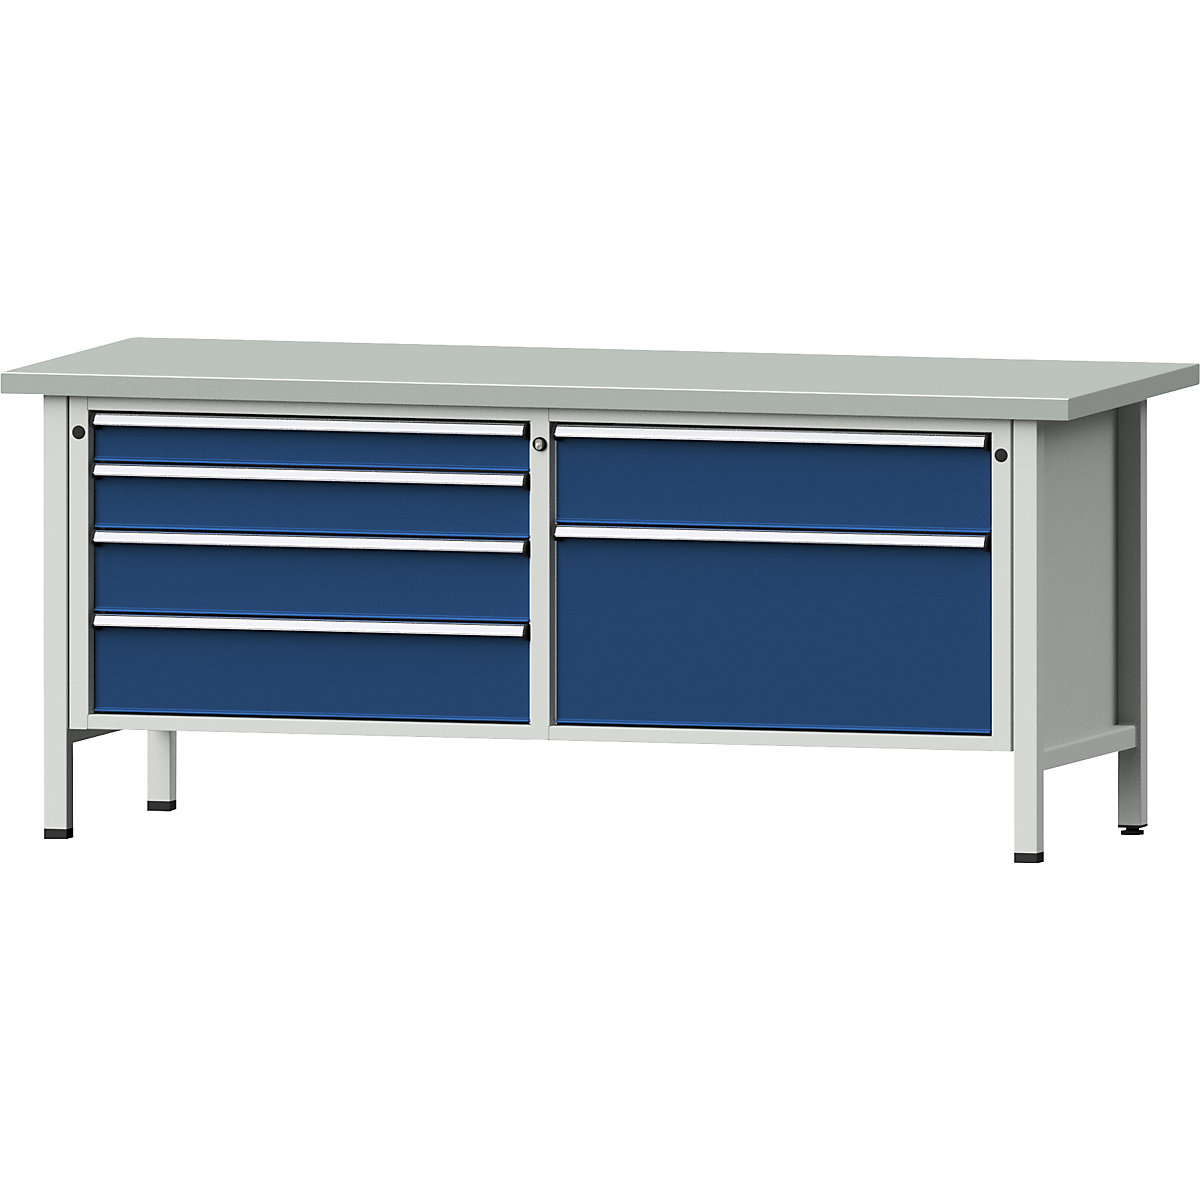 Établi avec tiroirs XL/XXL, sur piétement – ANKE, largeur 2000 mm, 6 tiroirs, plateau à revêtement en tôle d'acier, façade bleu gentiane-10